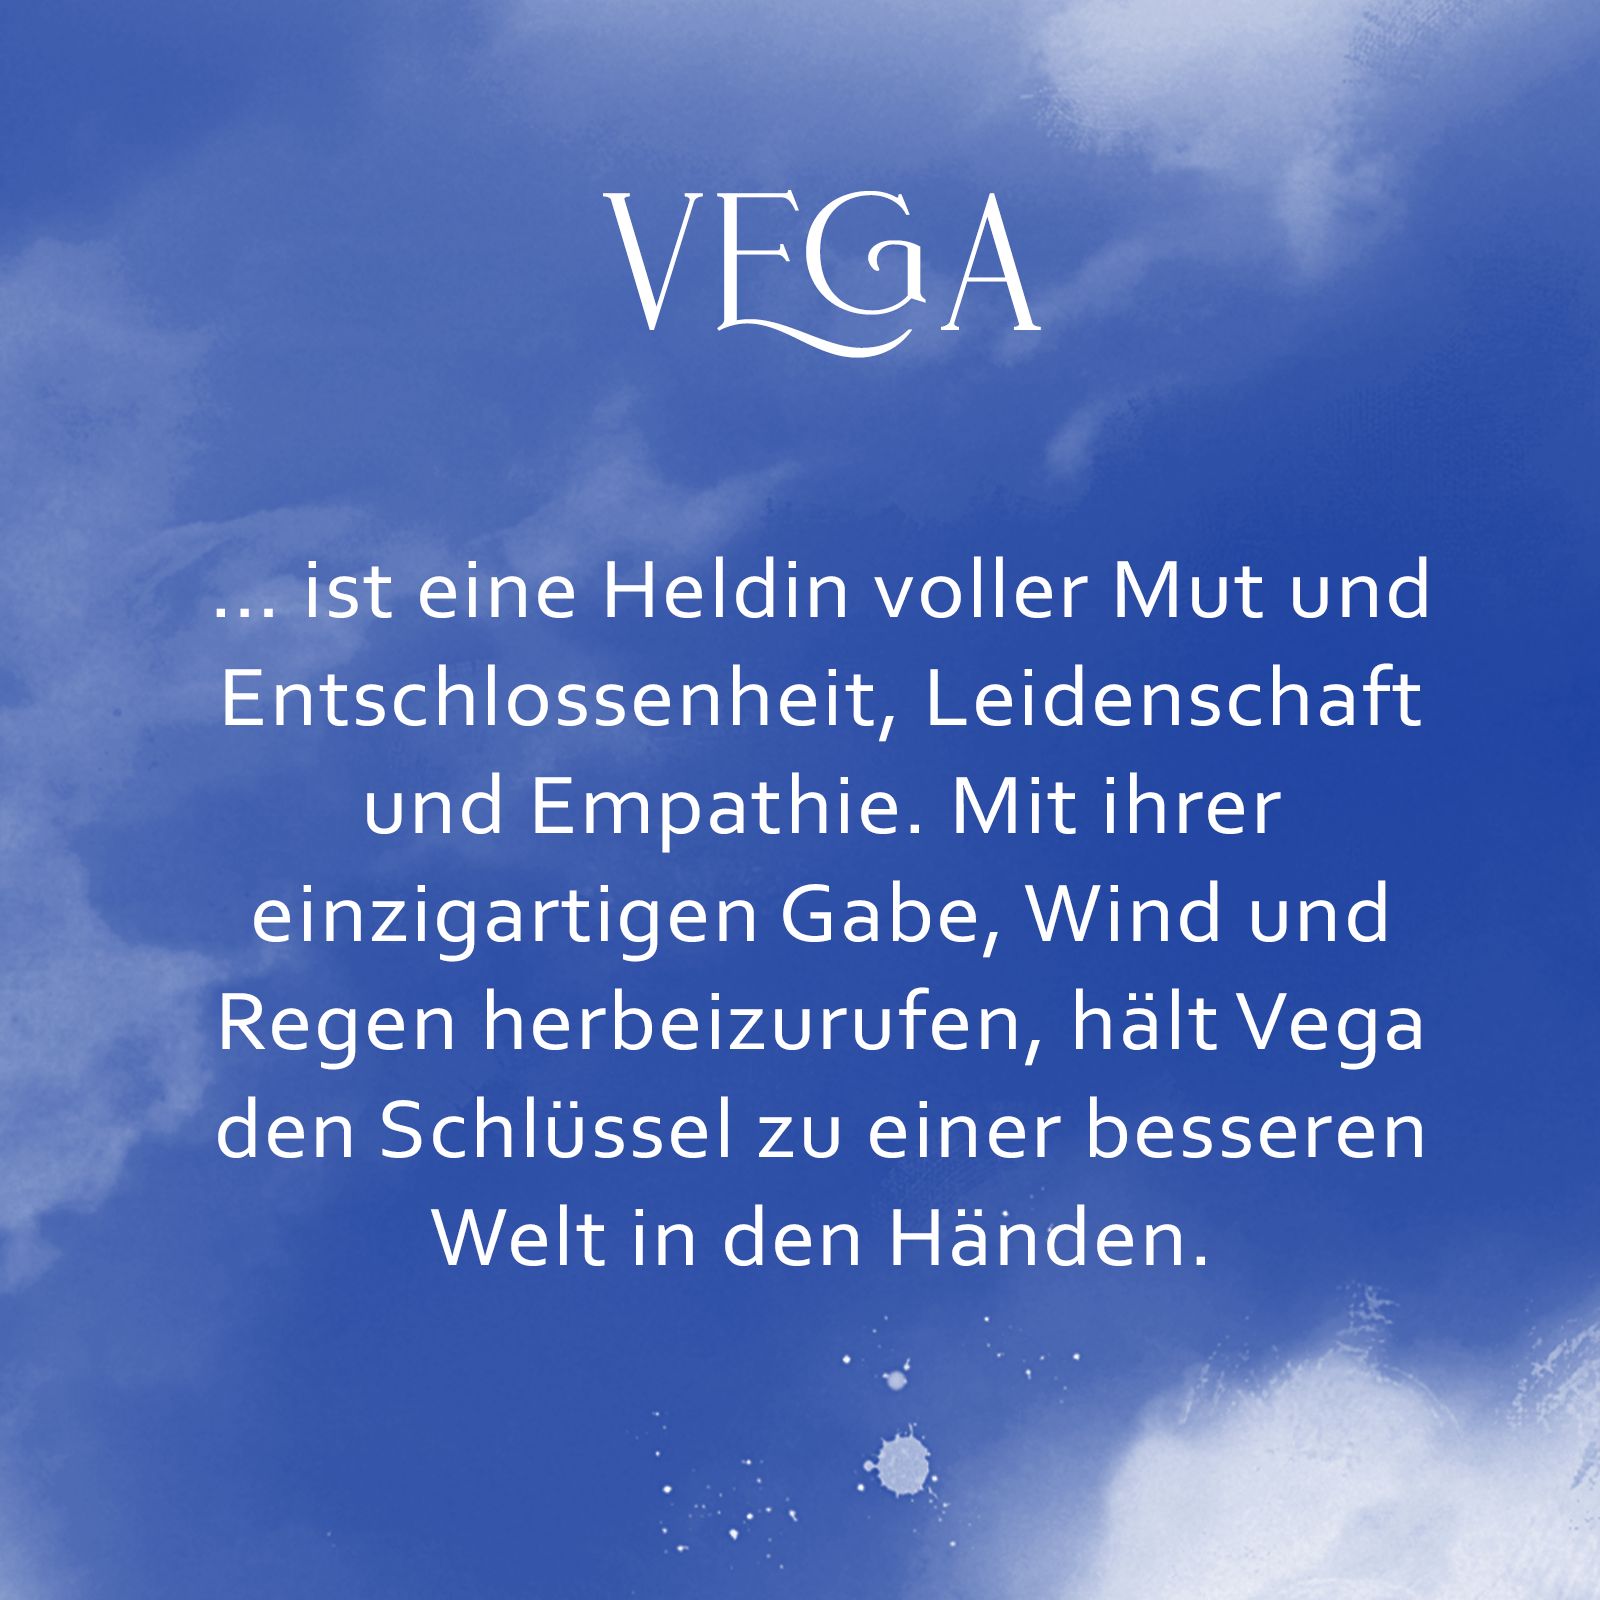 Eine blaue Kachel mit Text: "Vega: ... ist eine Heldin voller Mut und Leidenschaft, Entschlossenheit und Empathie. Mit ihrer einzigartigen Gabe, Wind und Regen herbeizurufen, hält sie den Schlüssel zu einer besseren Welt in den Händen.